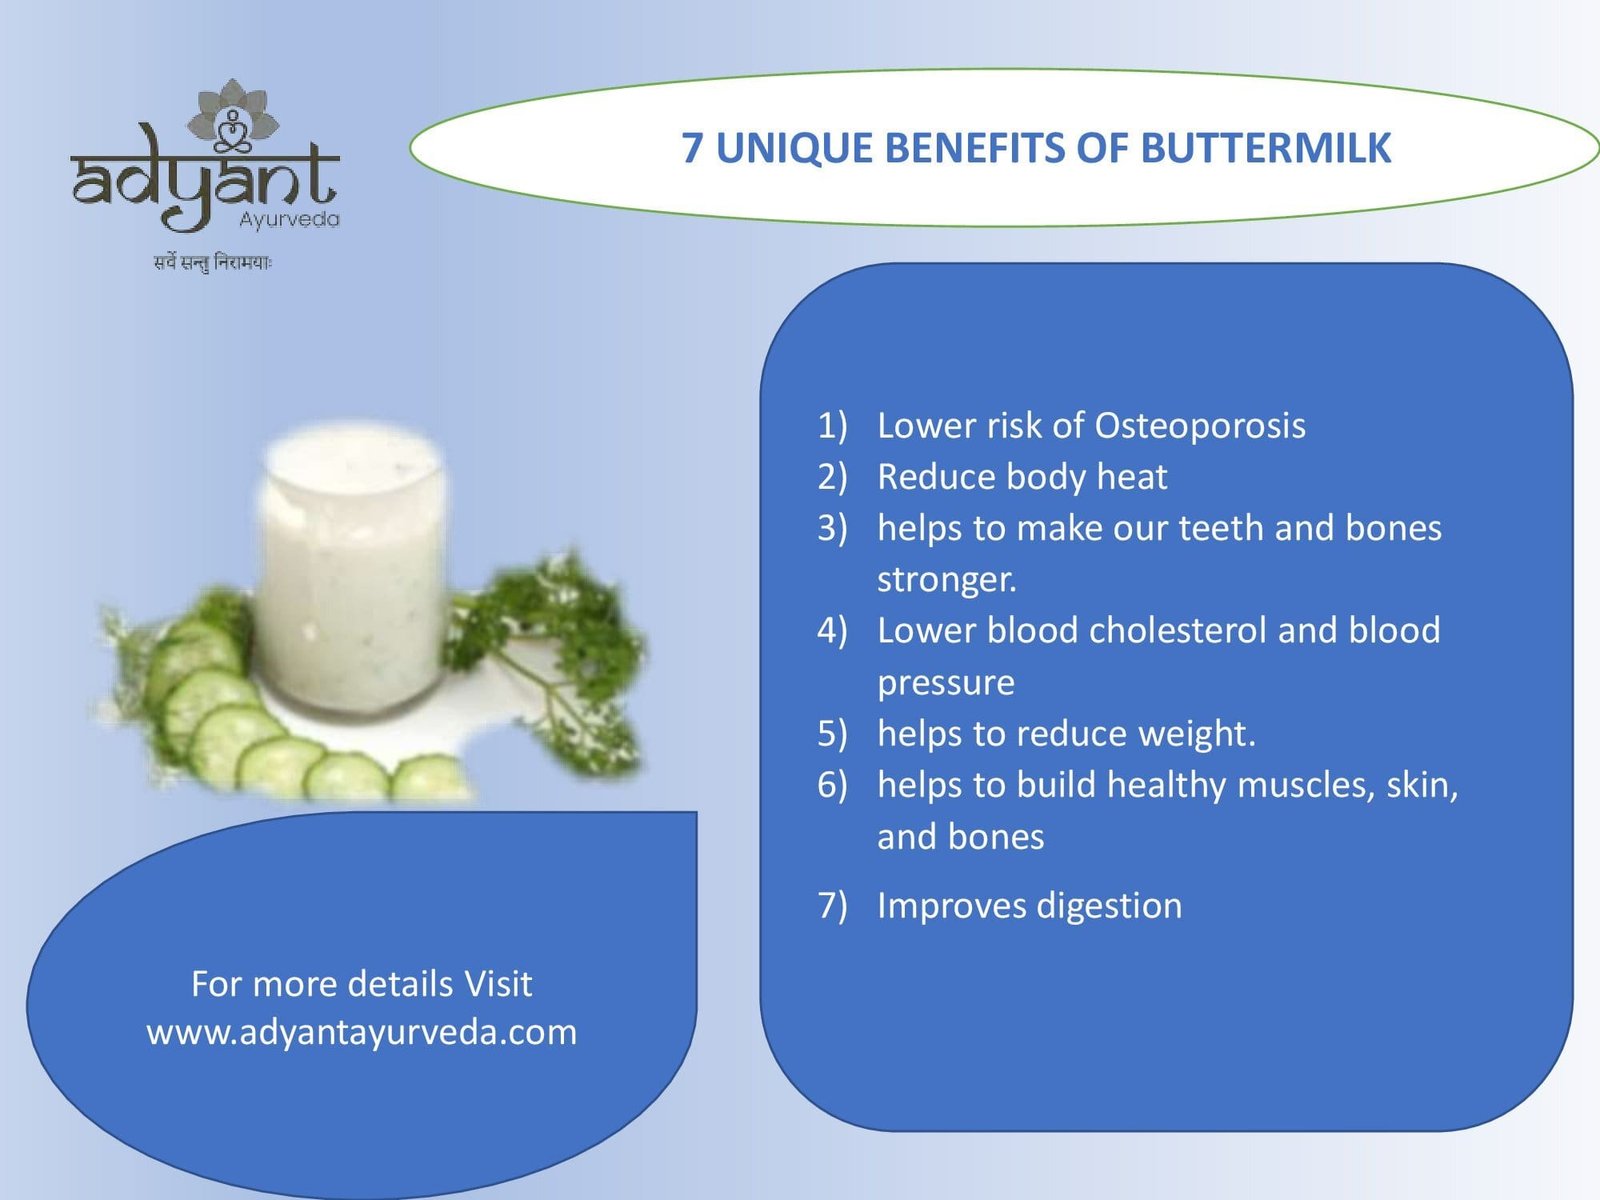 7 unique benefits of Buttermilk